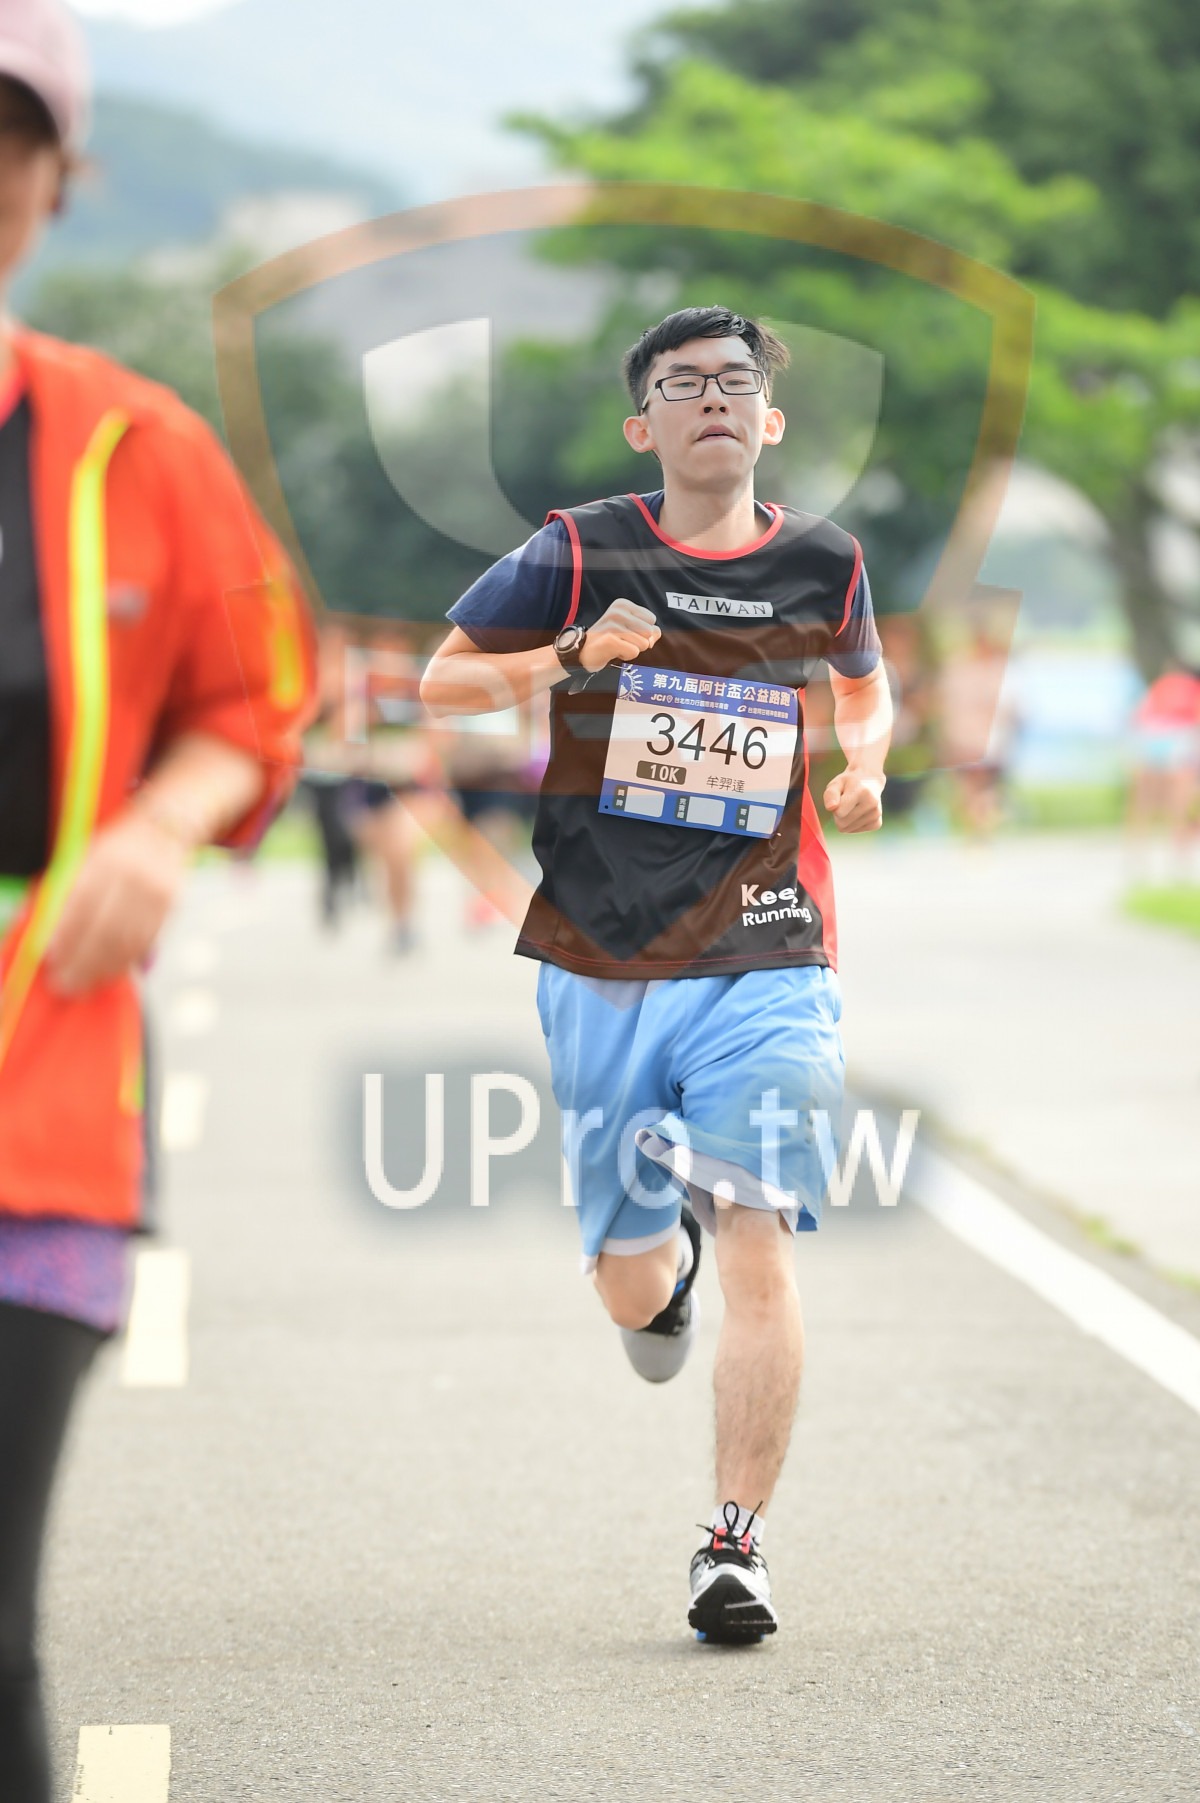 TAIW A,,3446,Running|終點1|中年人